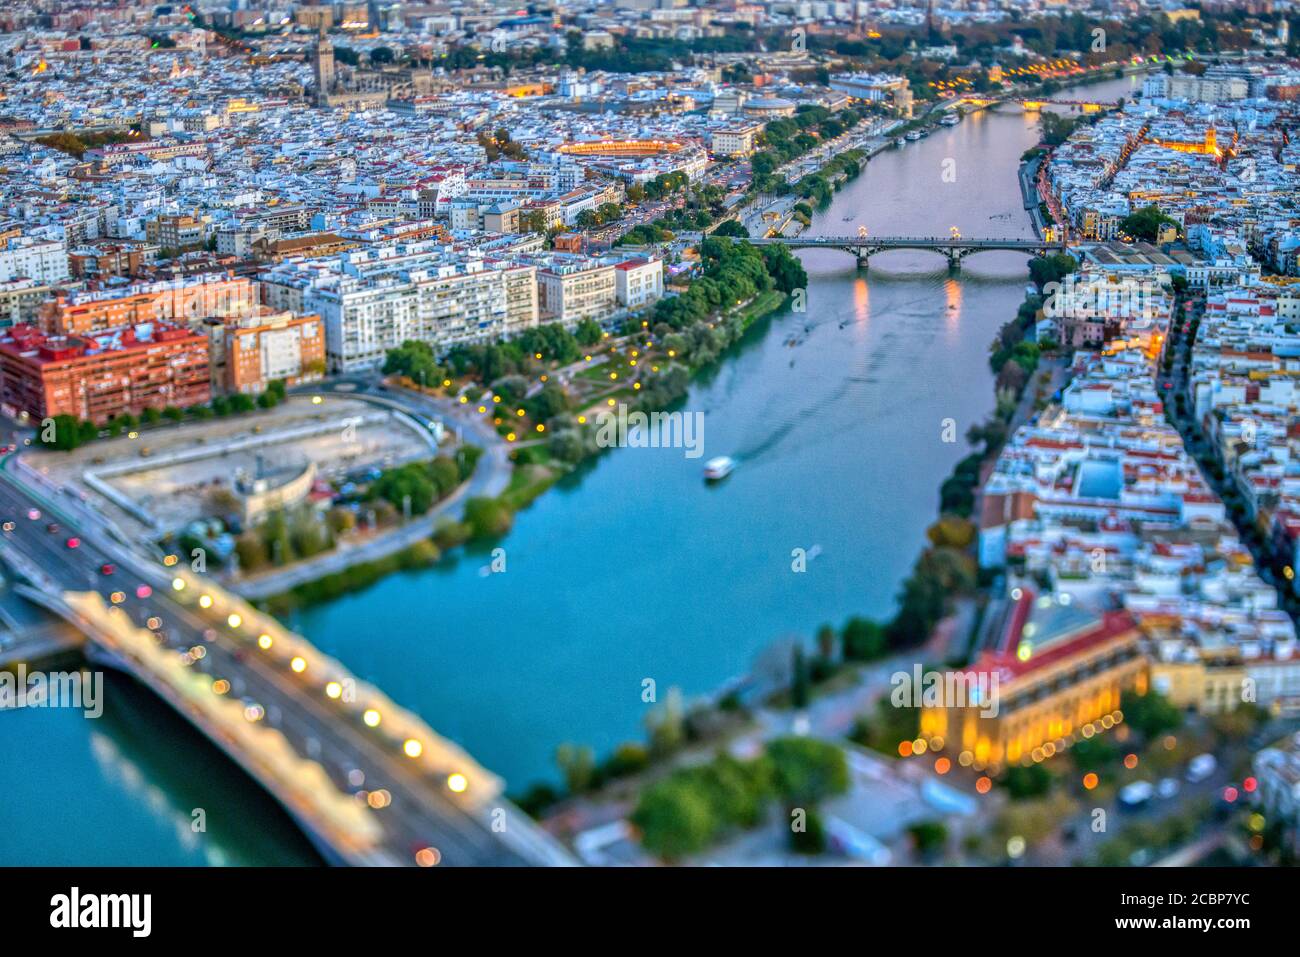 Vista aerea del centro di Siviglia (Spagna). Foto scattata con un obiettivo inclinato per una profondità di campo inferiore. Foto Stock